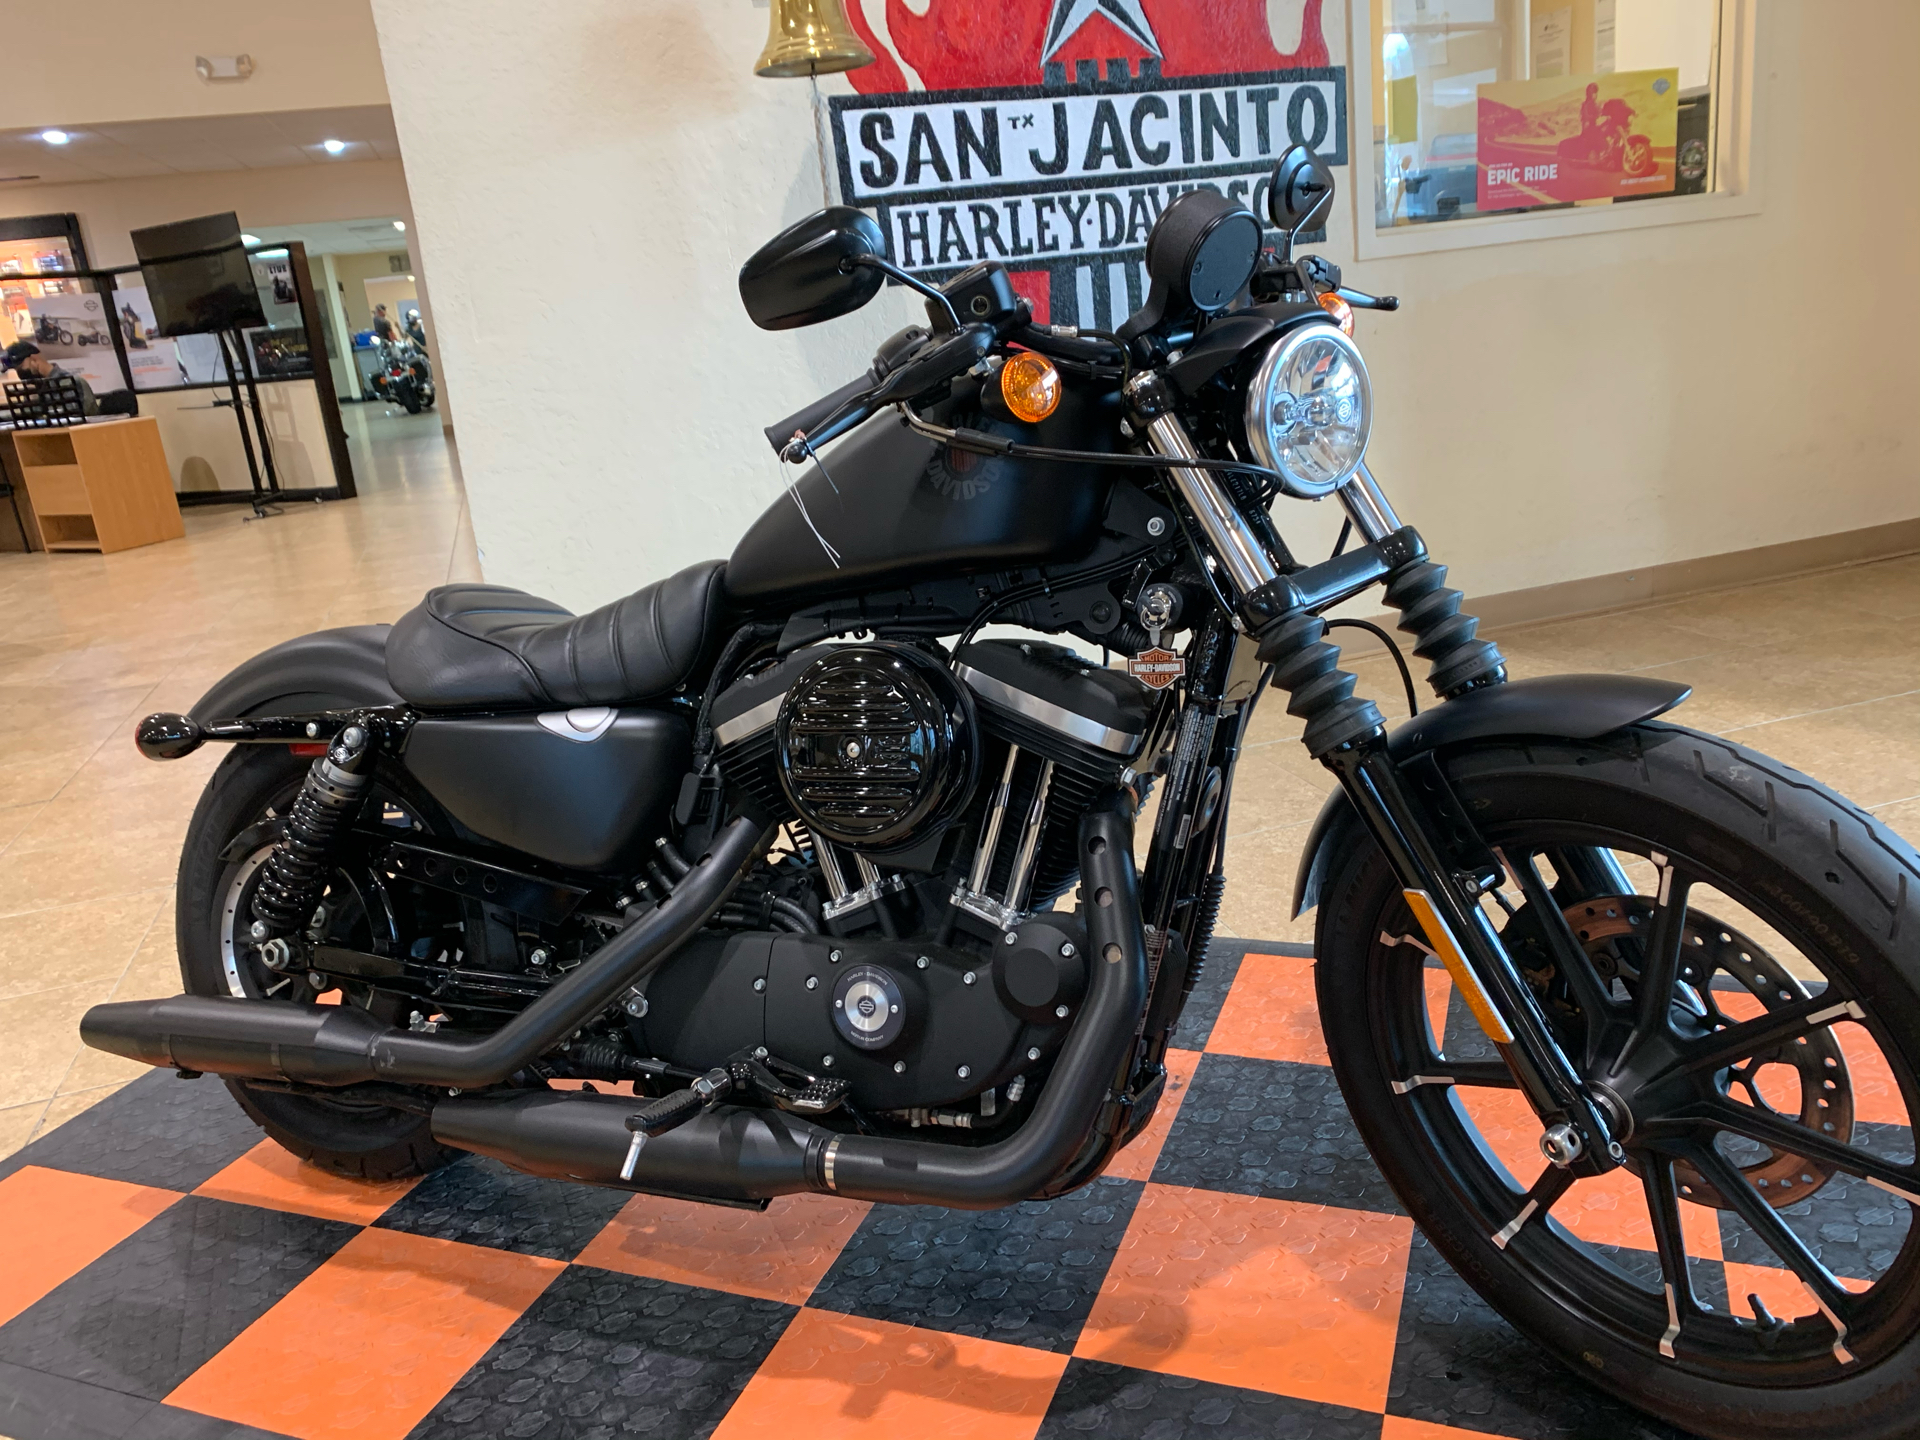 Used 2020 Harley Davidson Iron 883 Motorcycles In Pasadena Tx 433673 Black Denim